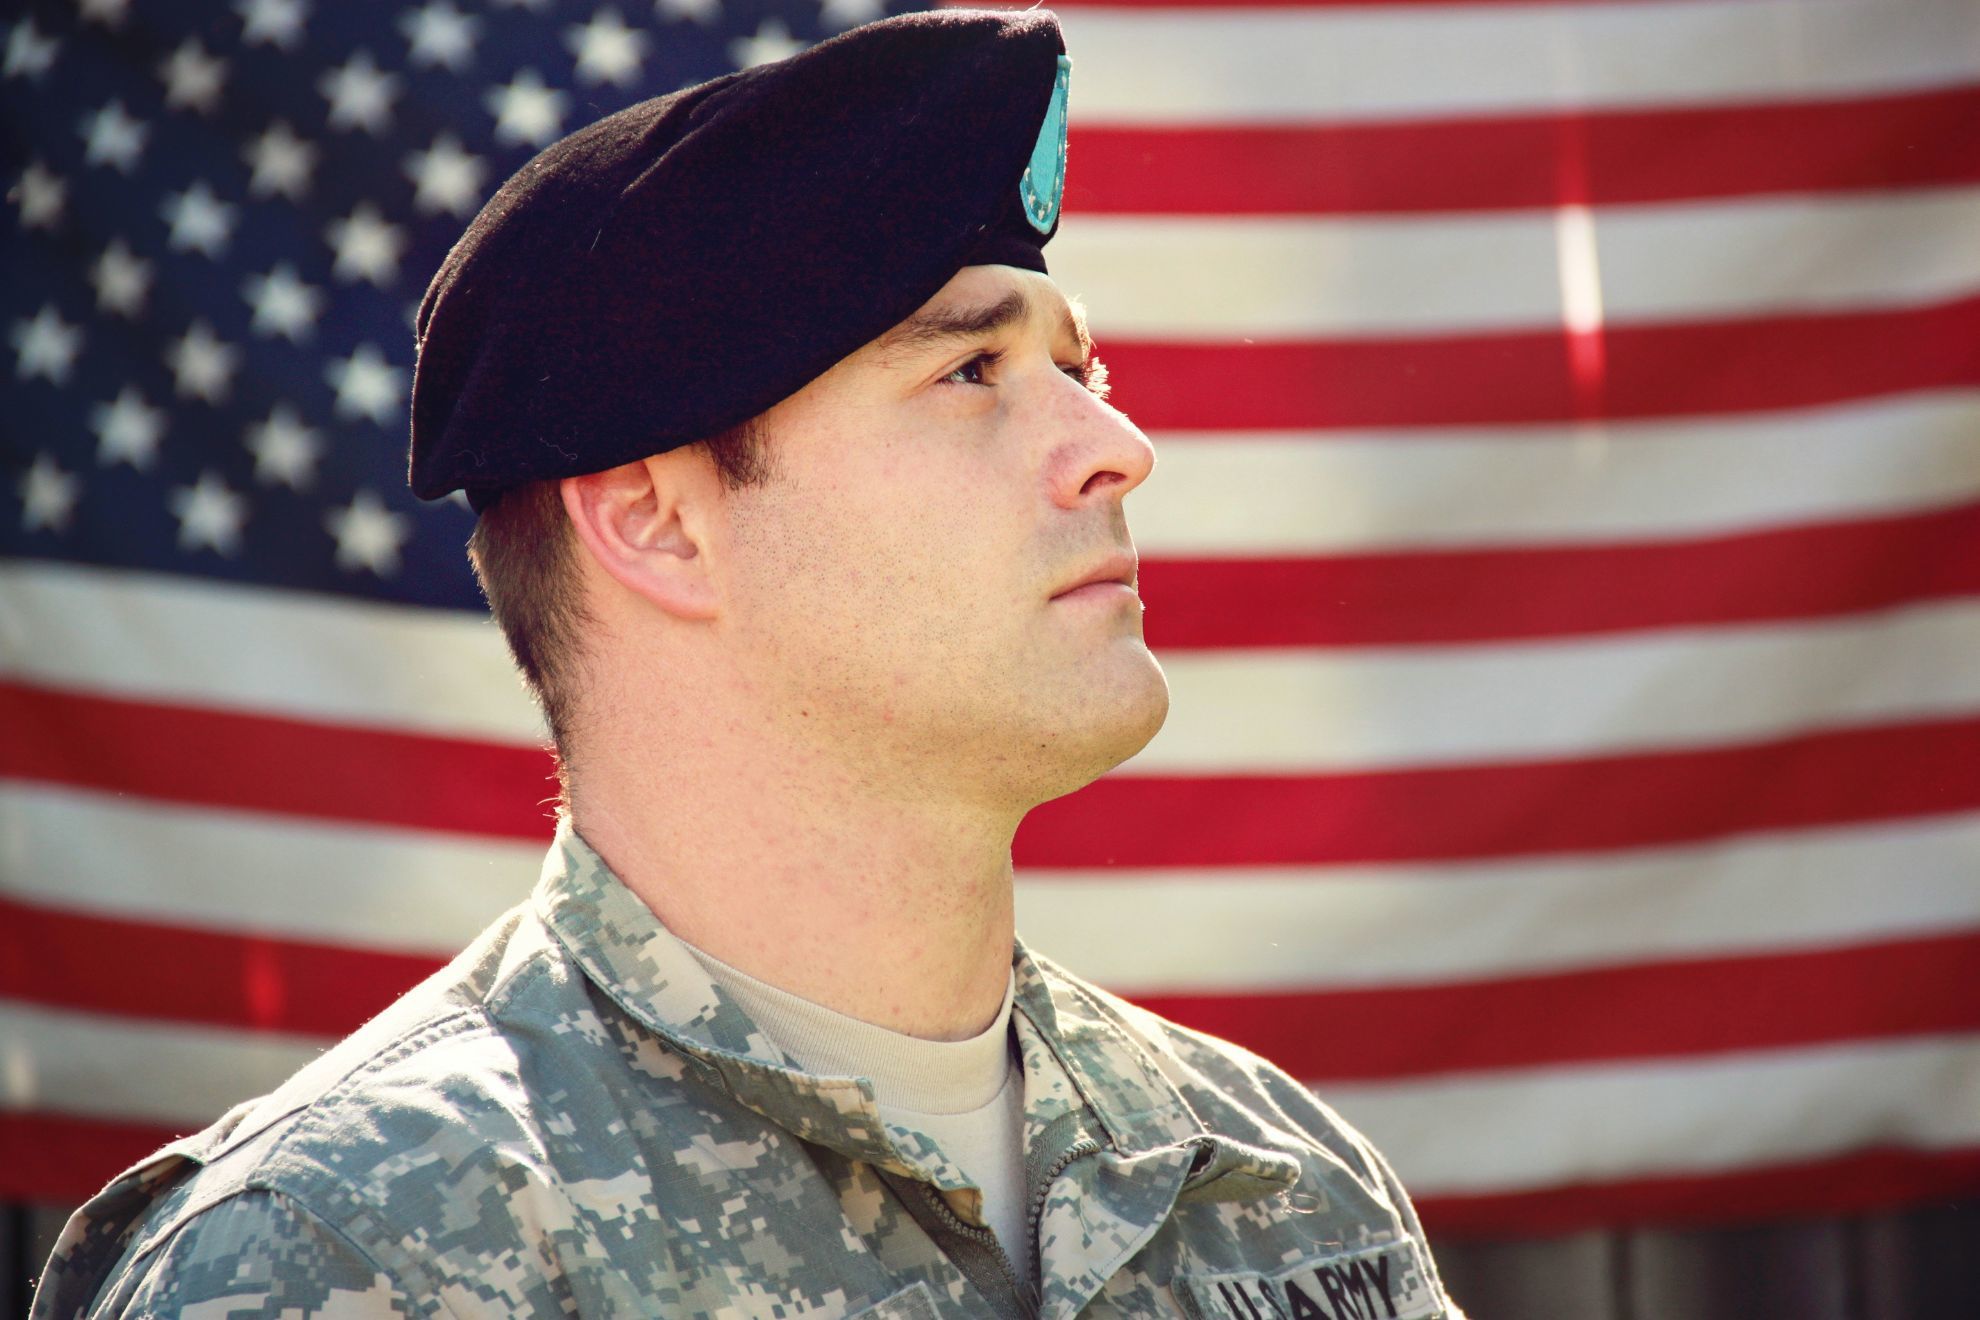 Combat veteran honoring the American flag